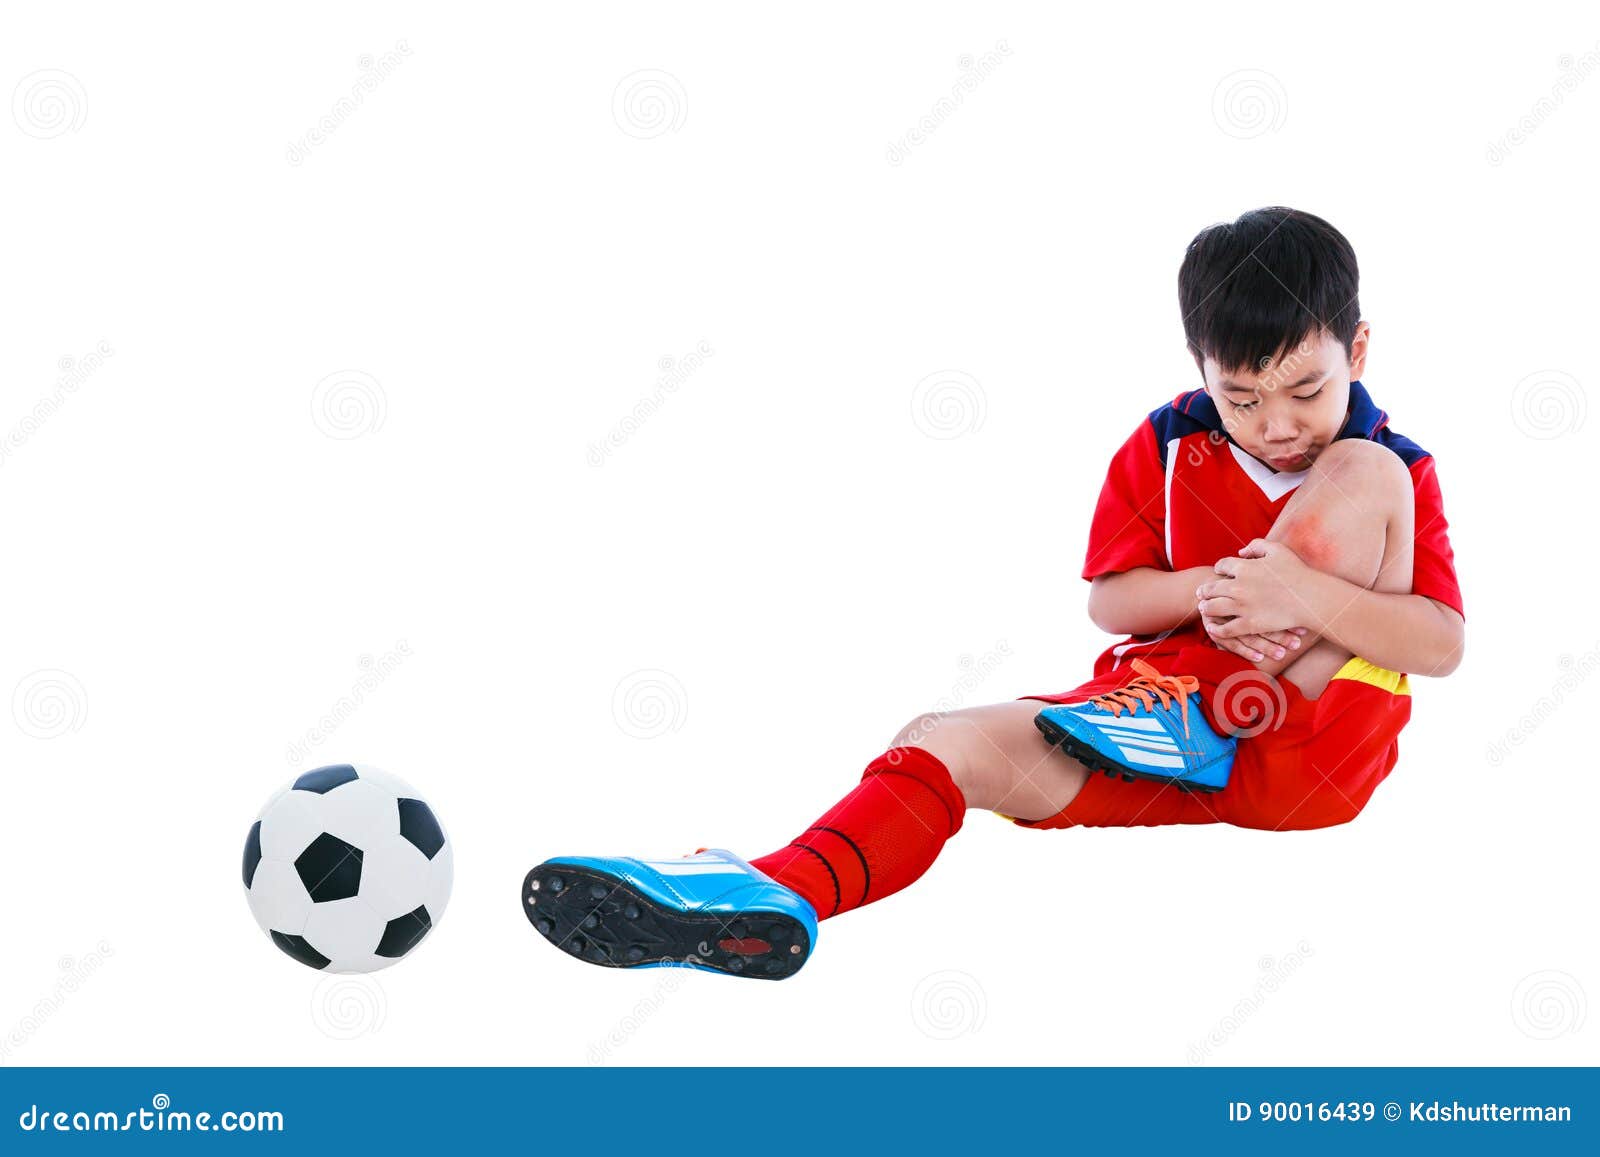 Criança A Jogar Futebol. Um Rapaz Asiático A Dar Pontapés No Ssoccer  Vermelho. Foto Royalty Free, Gravuras, Imagens e Banco de fotografias.  Image 199633197